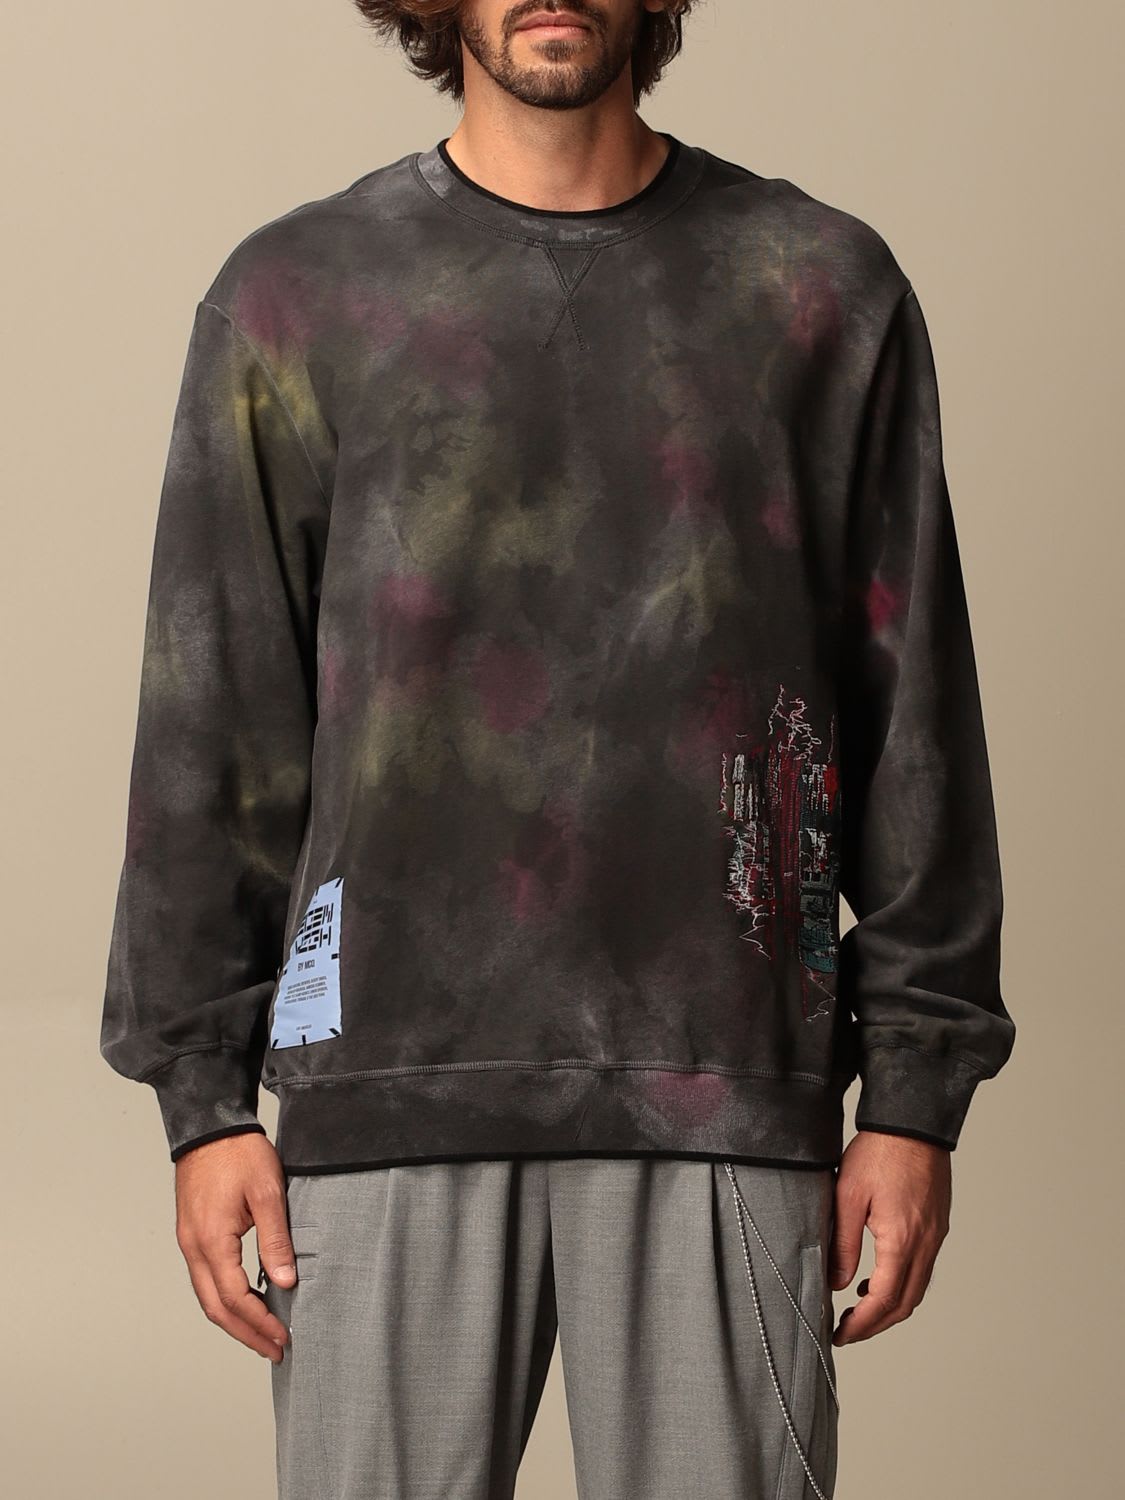 McQ Alexander McQueen Mcq Sweatshirt Eden High Sweatshirt By Mcq In Printed Cotton